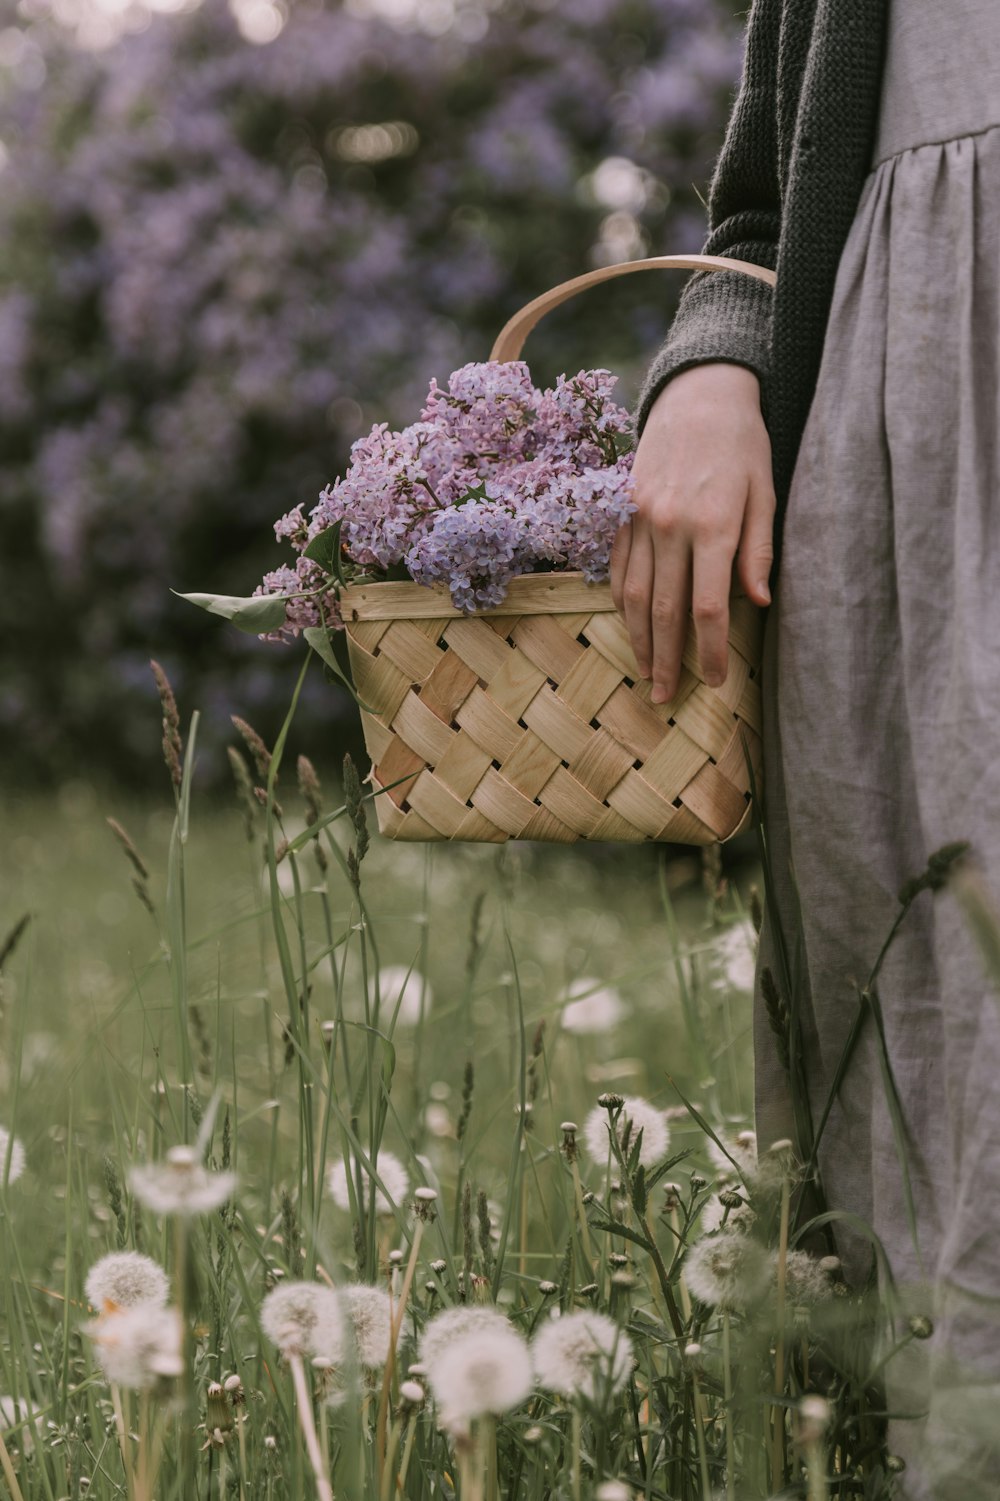 una persona sosteniendo una canasta con flores en ella